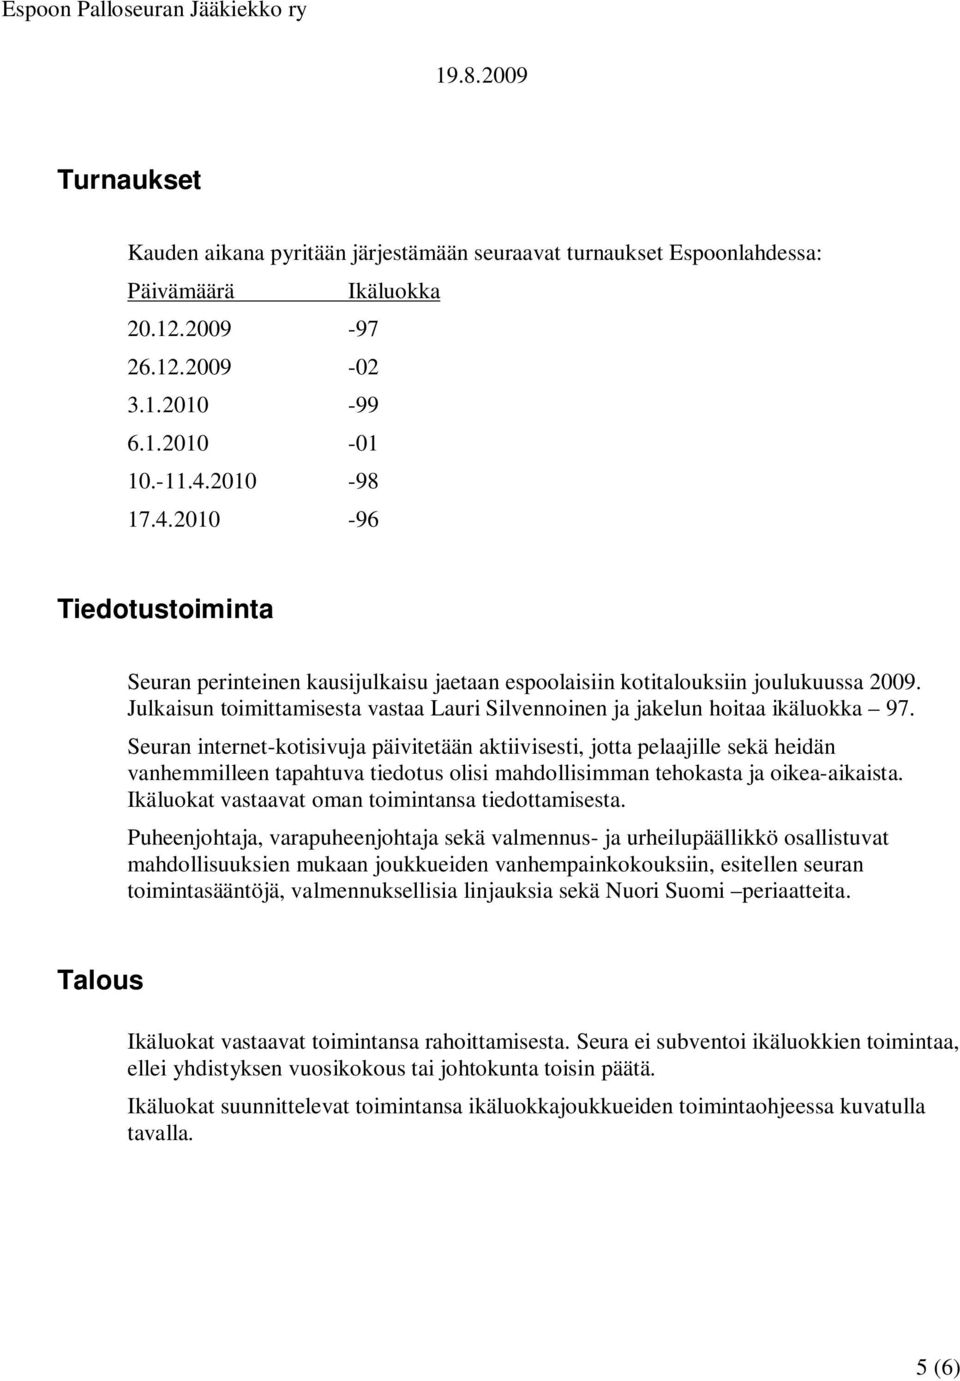 Julkaisun toimittamisesta vastaa Lauri Silvennoinen ja jakelun hoitaa ikäluokka 97.